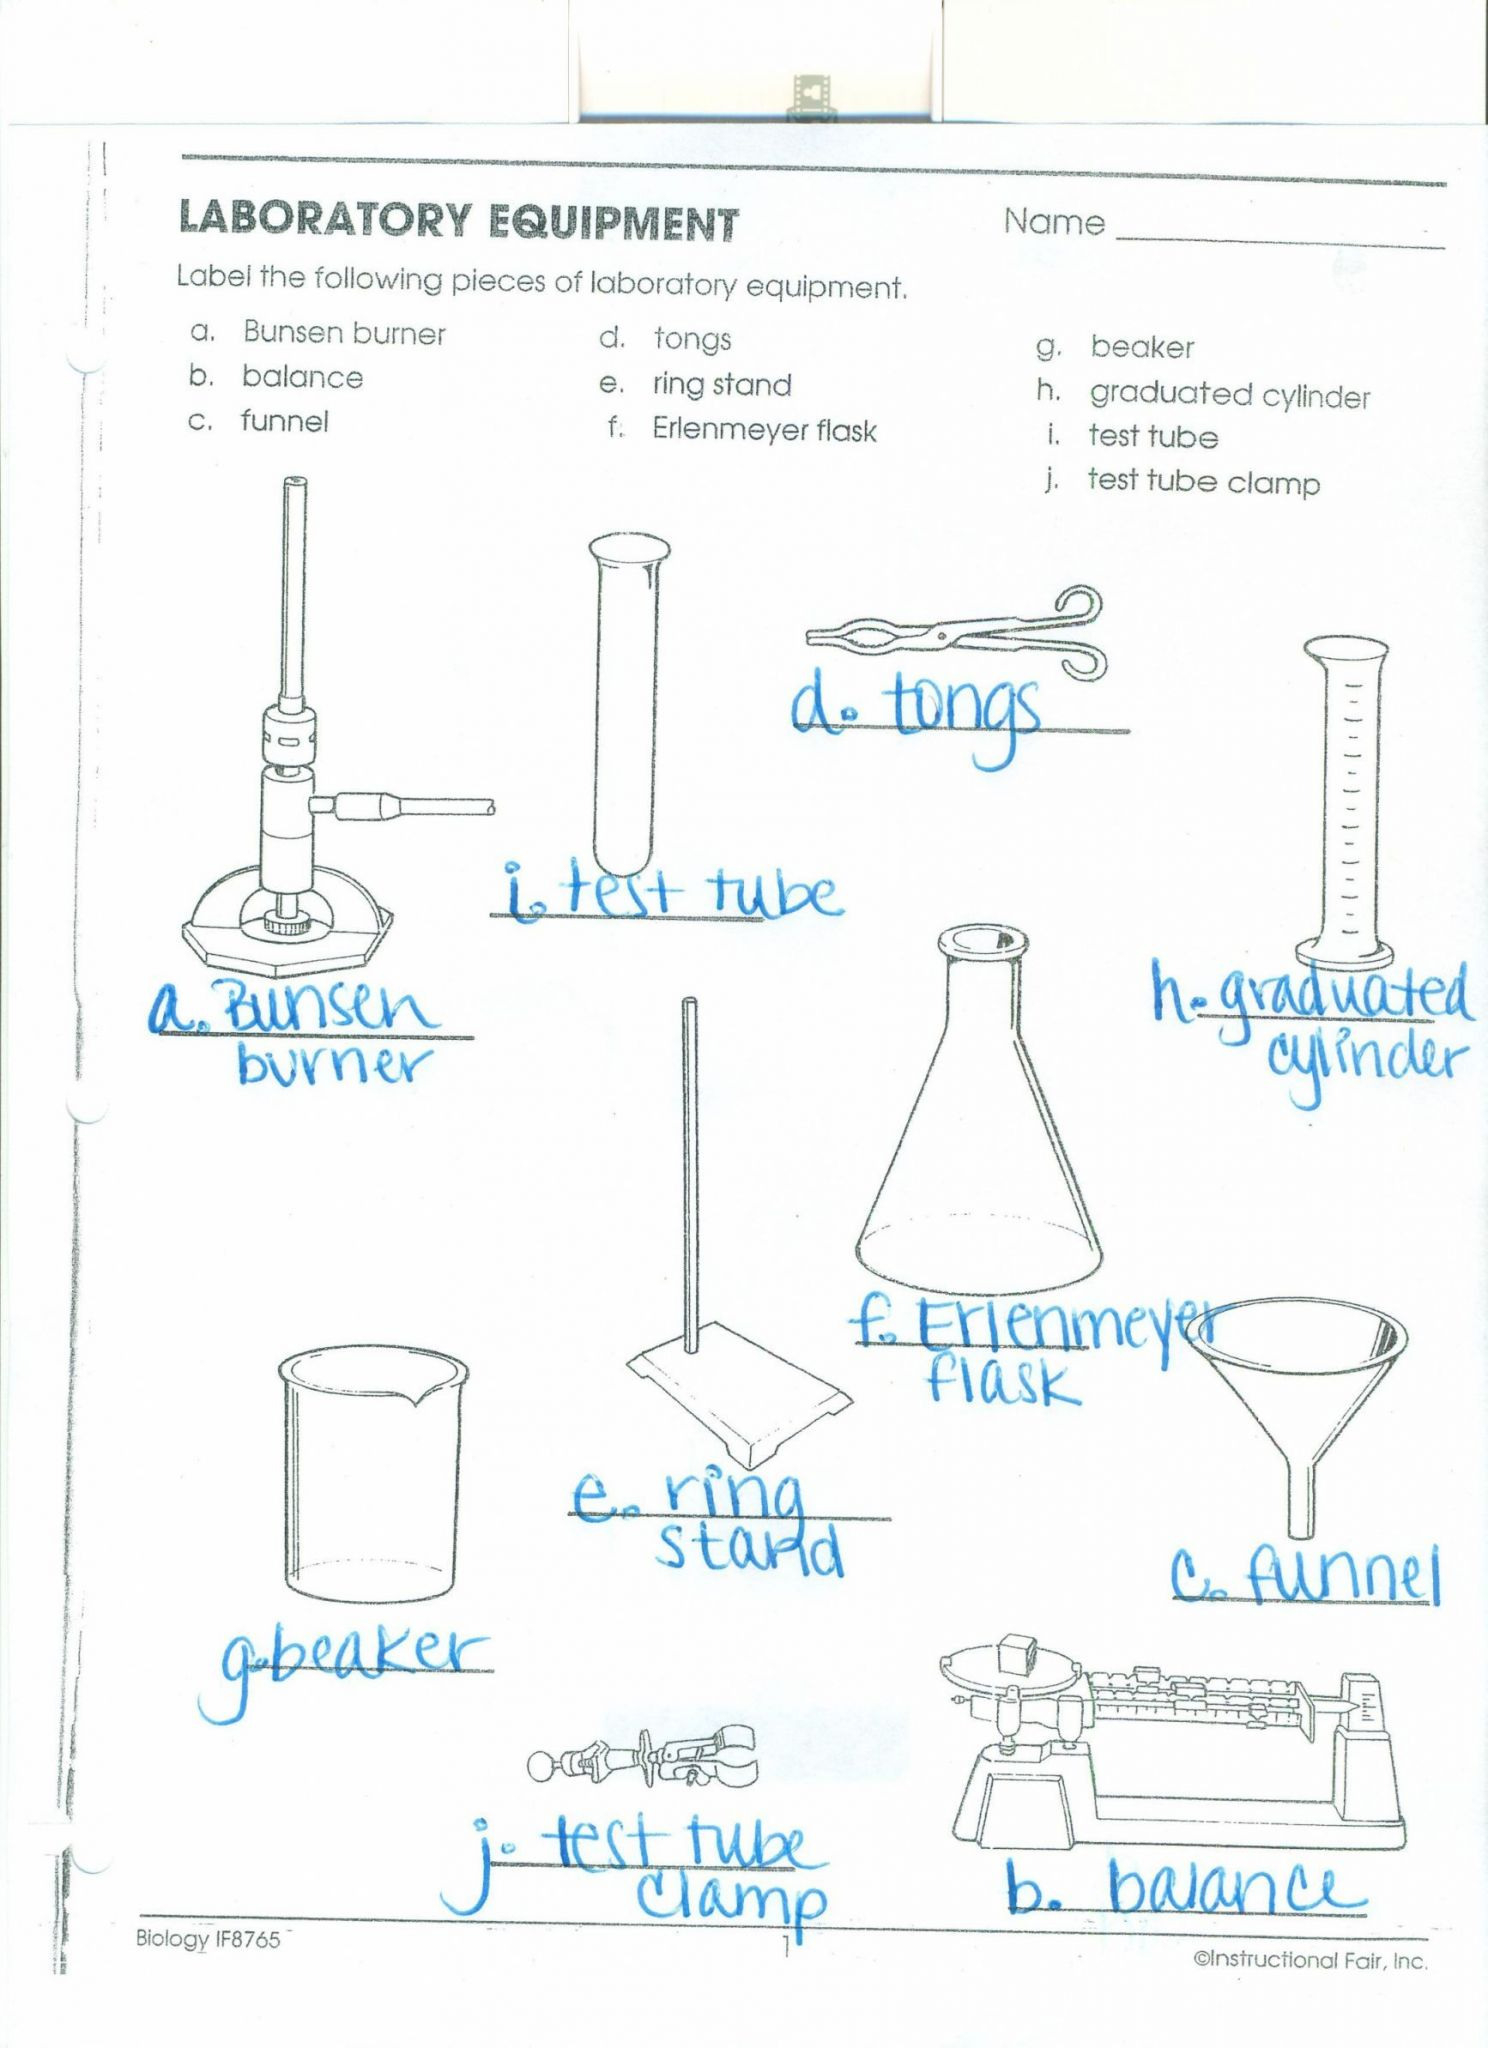 laboratory-equipment-worksheet